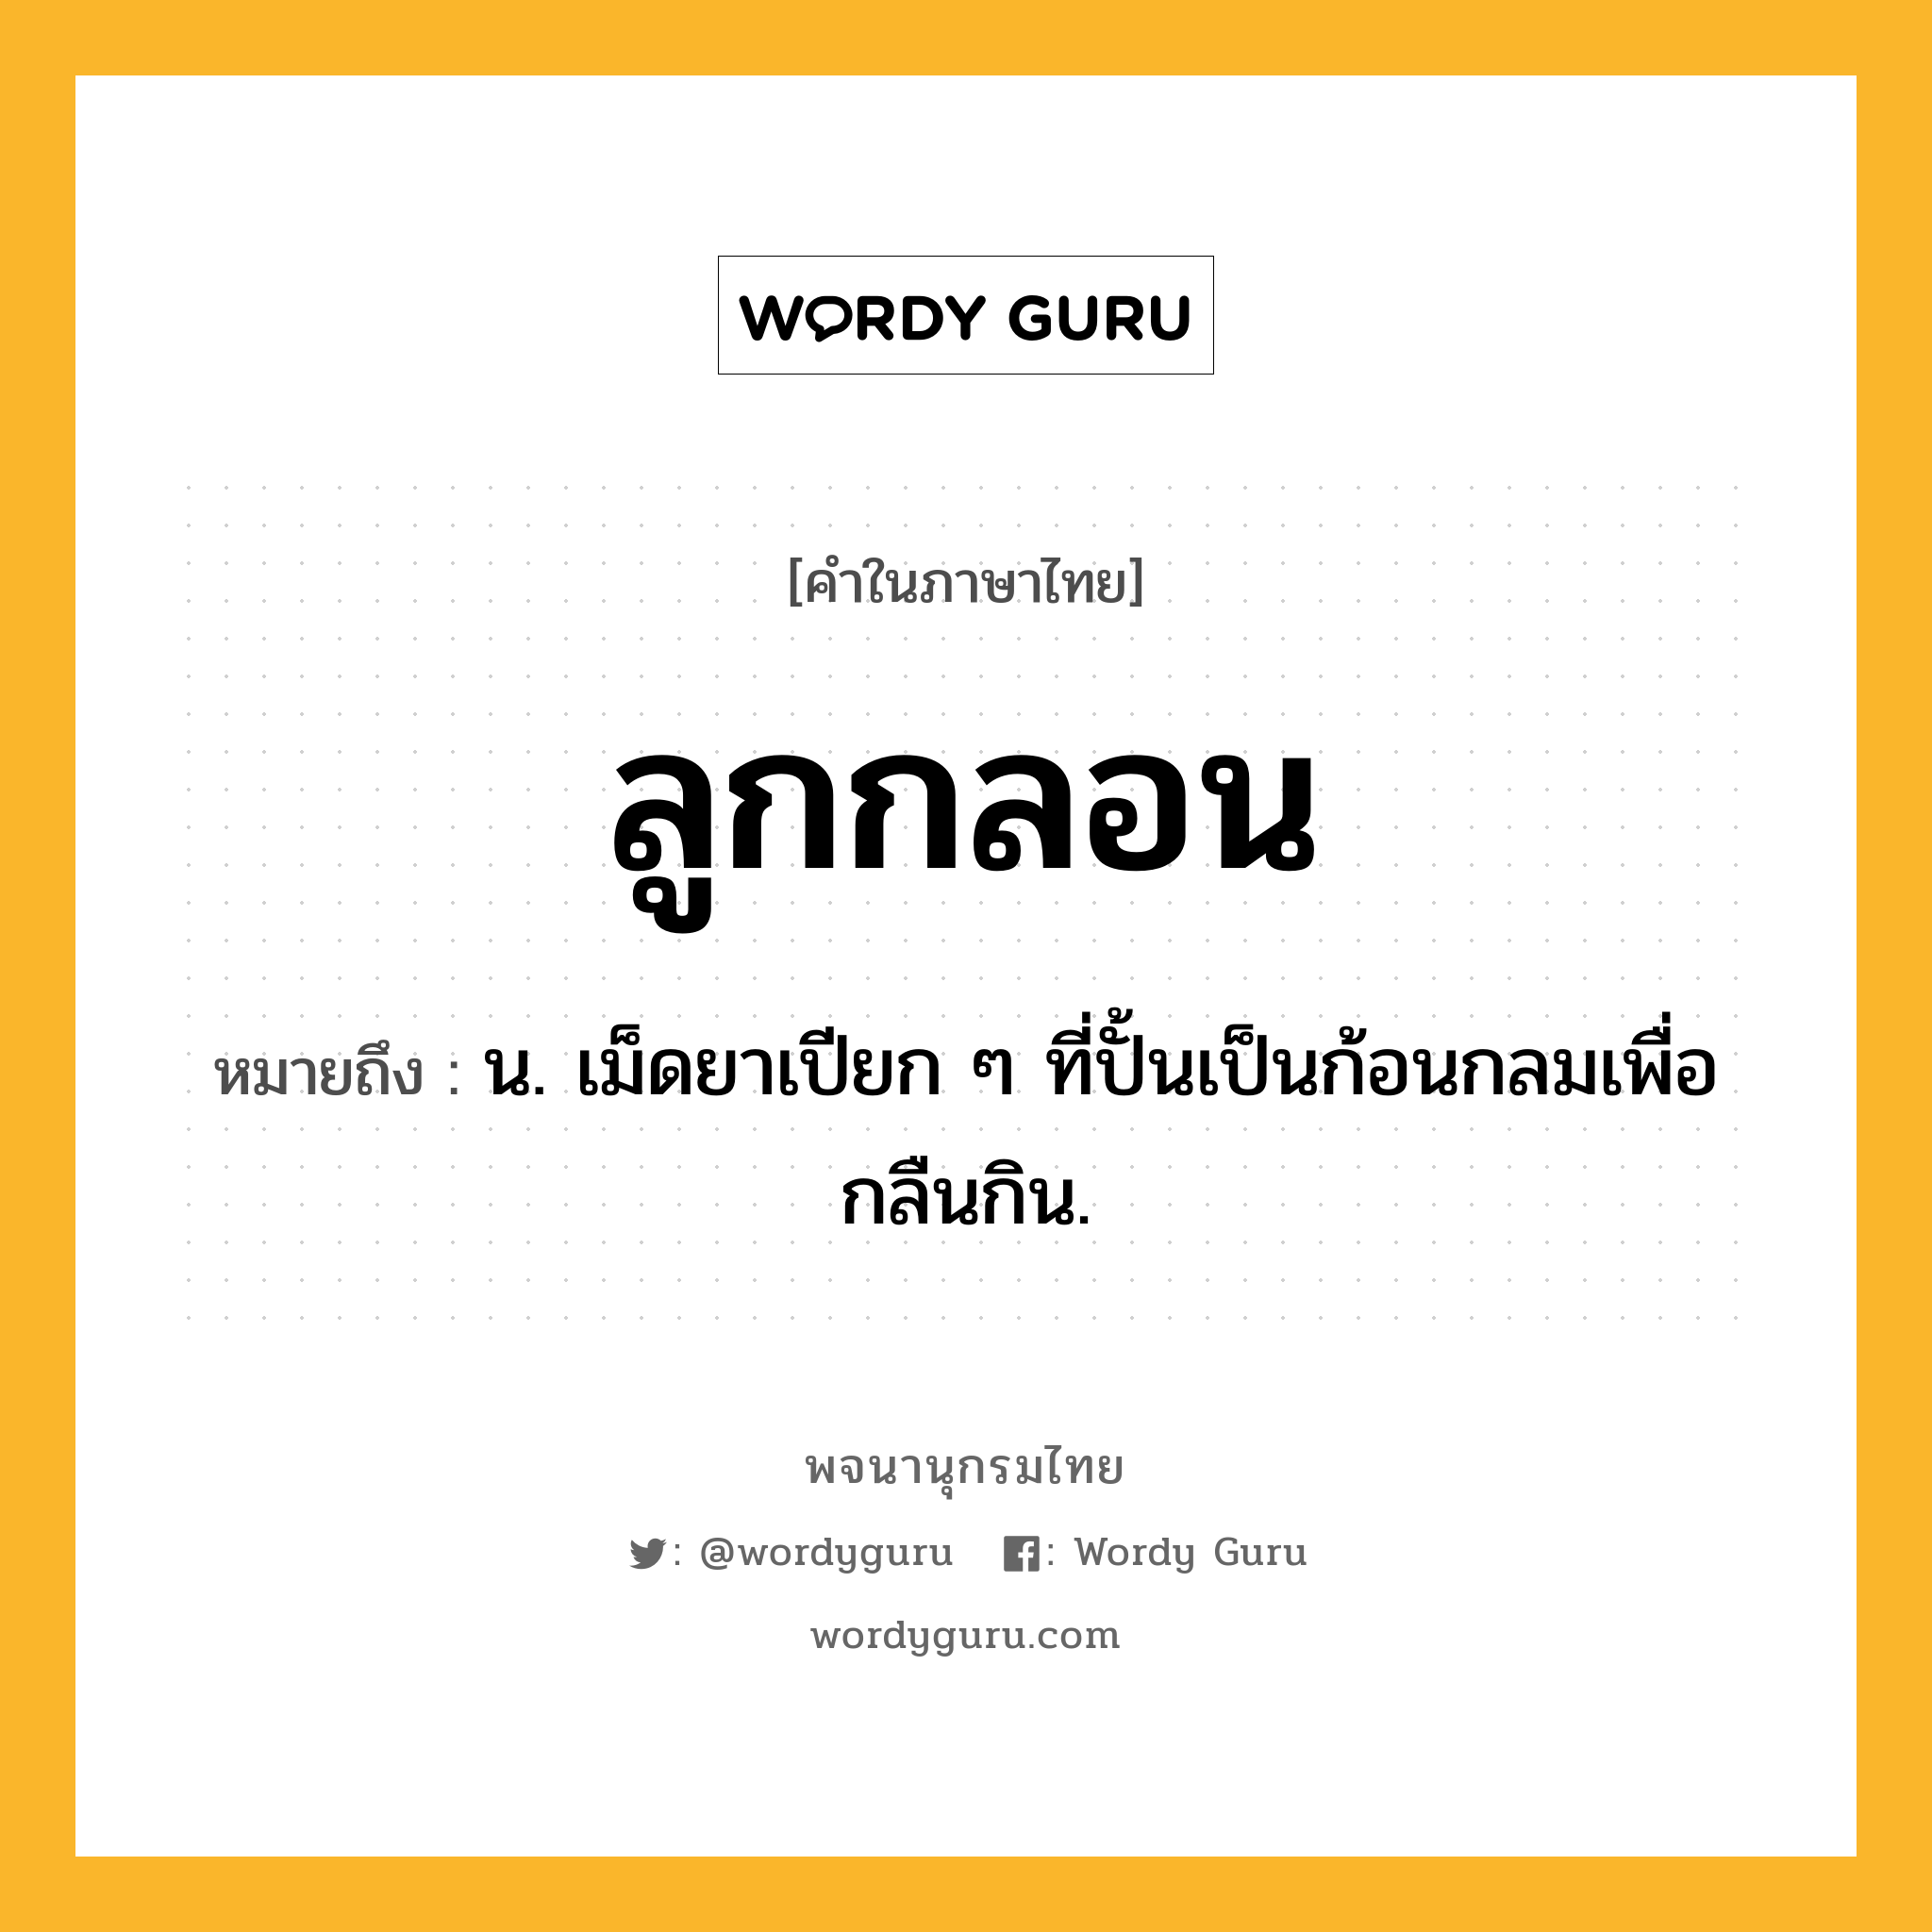 ลูกกลอน หมายถึงอะไร?, คำในภาษาไทย ลูกกลอน หมายถึง น. เม็ดยาเปียก ๆ ที่ปั้นเป็นก้อนกลมเพื่อกลืนกิน.